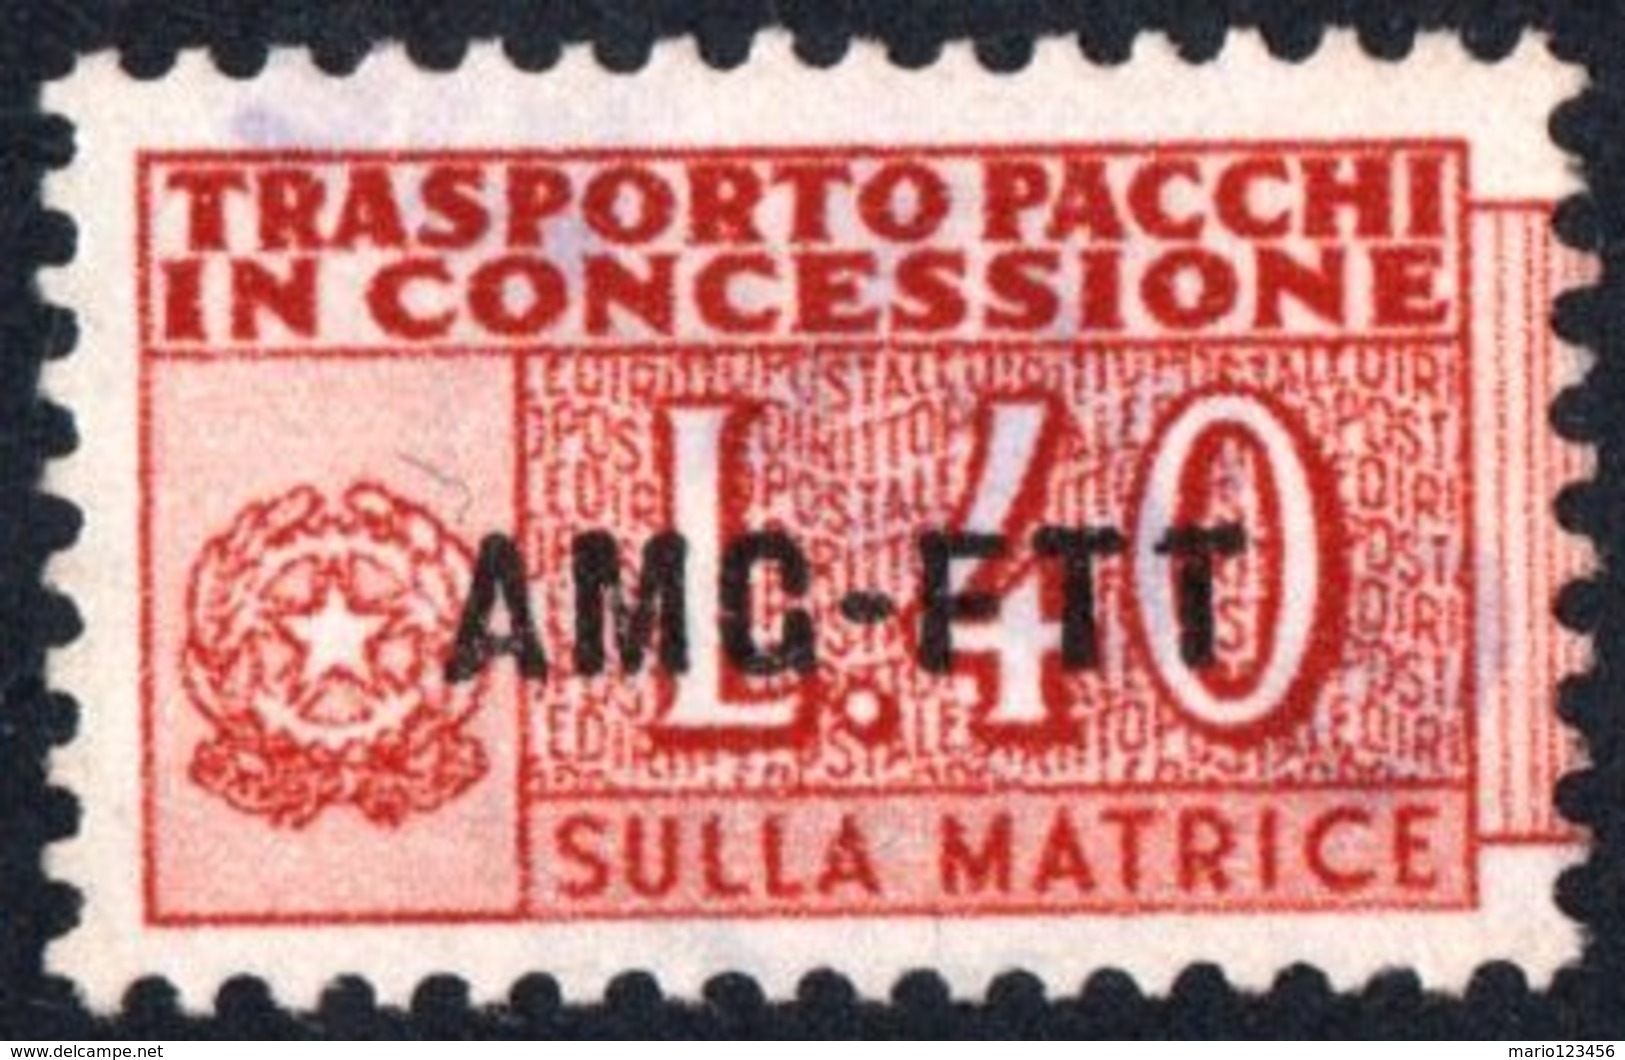 TRIESTE, ZONA A, ITALIA, ITALY, PACCHI IN CONCESSIONE, PARCEL TRANSPORT, 1953, FRANCOBOLLO USATO Michel GB1   Scott QY1 - Postpaketen/concessie